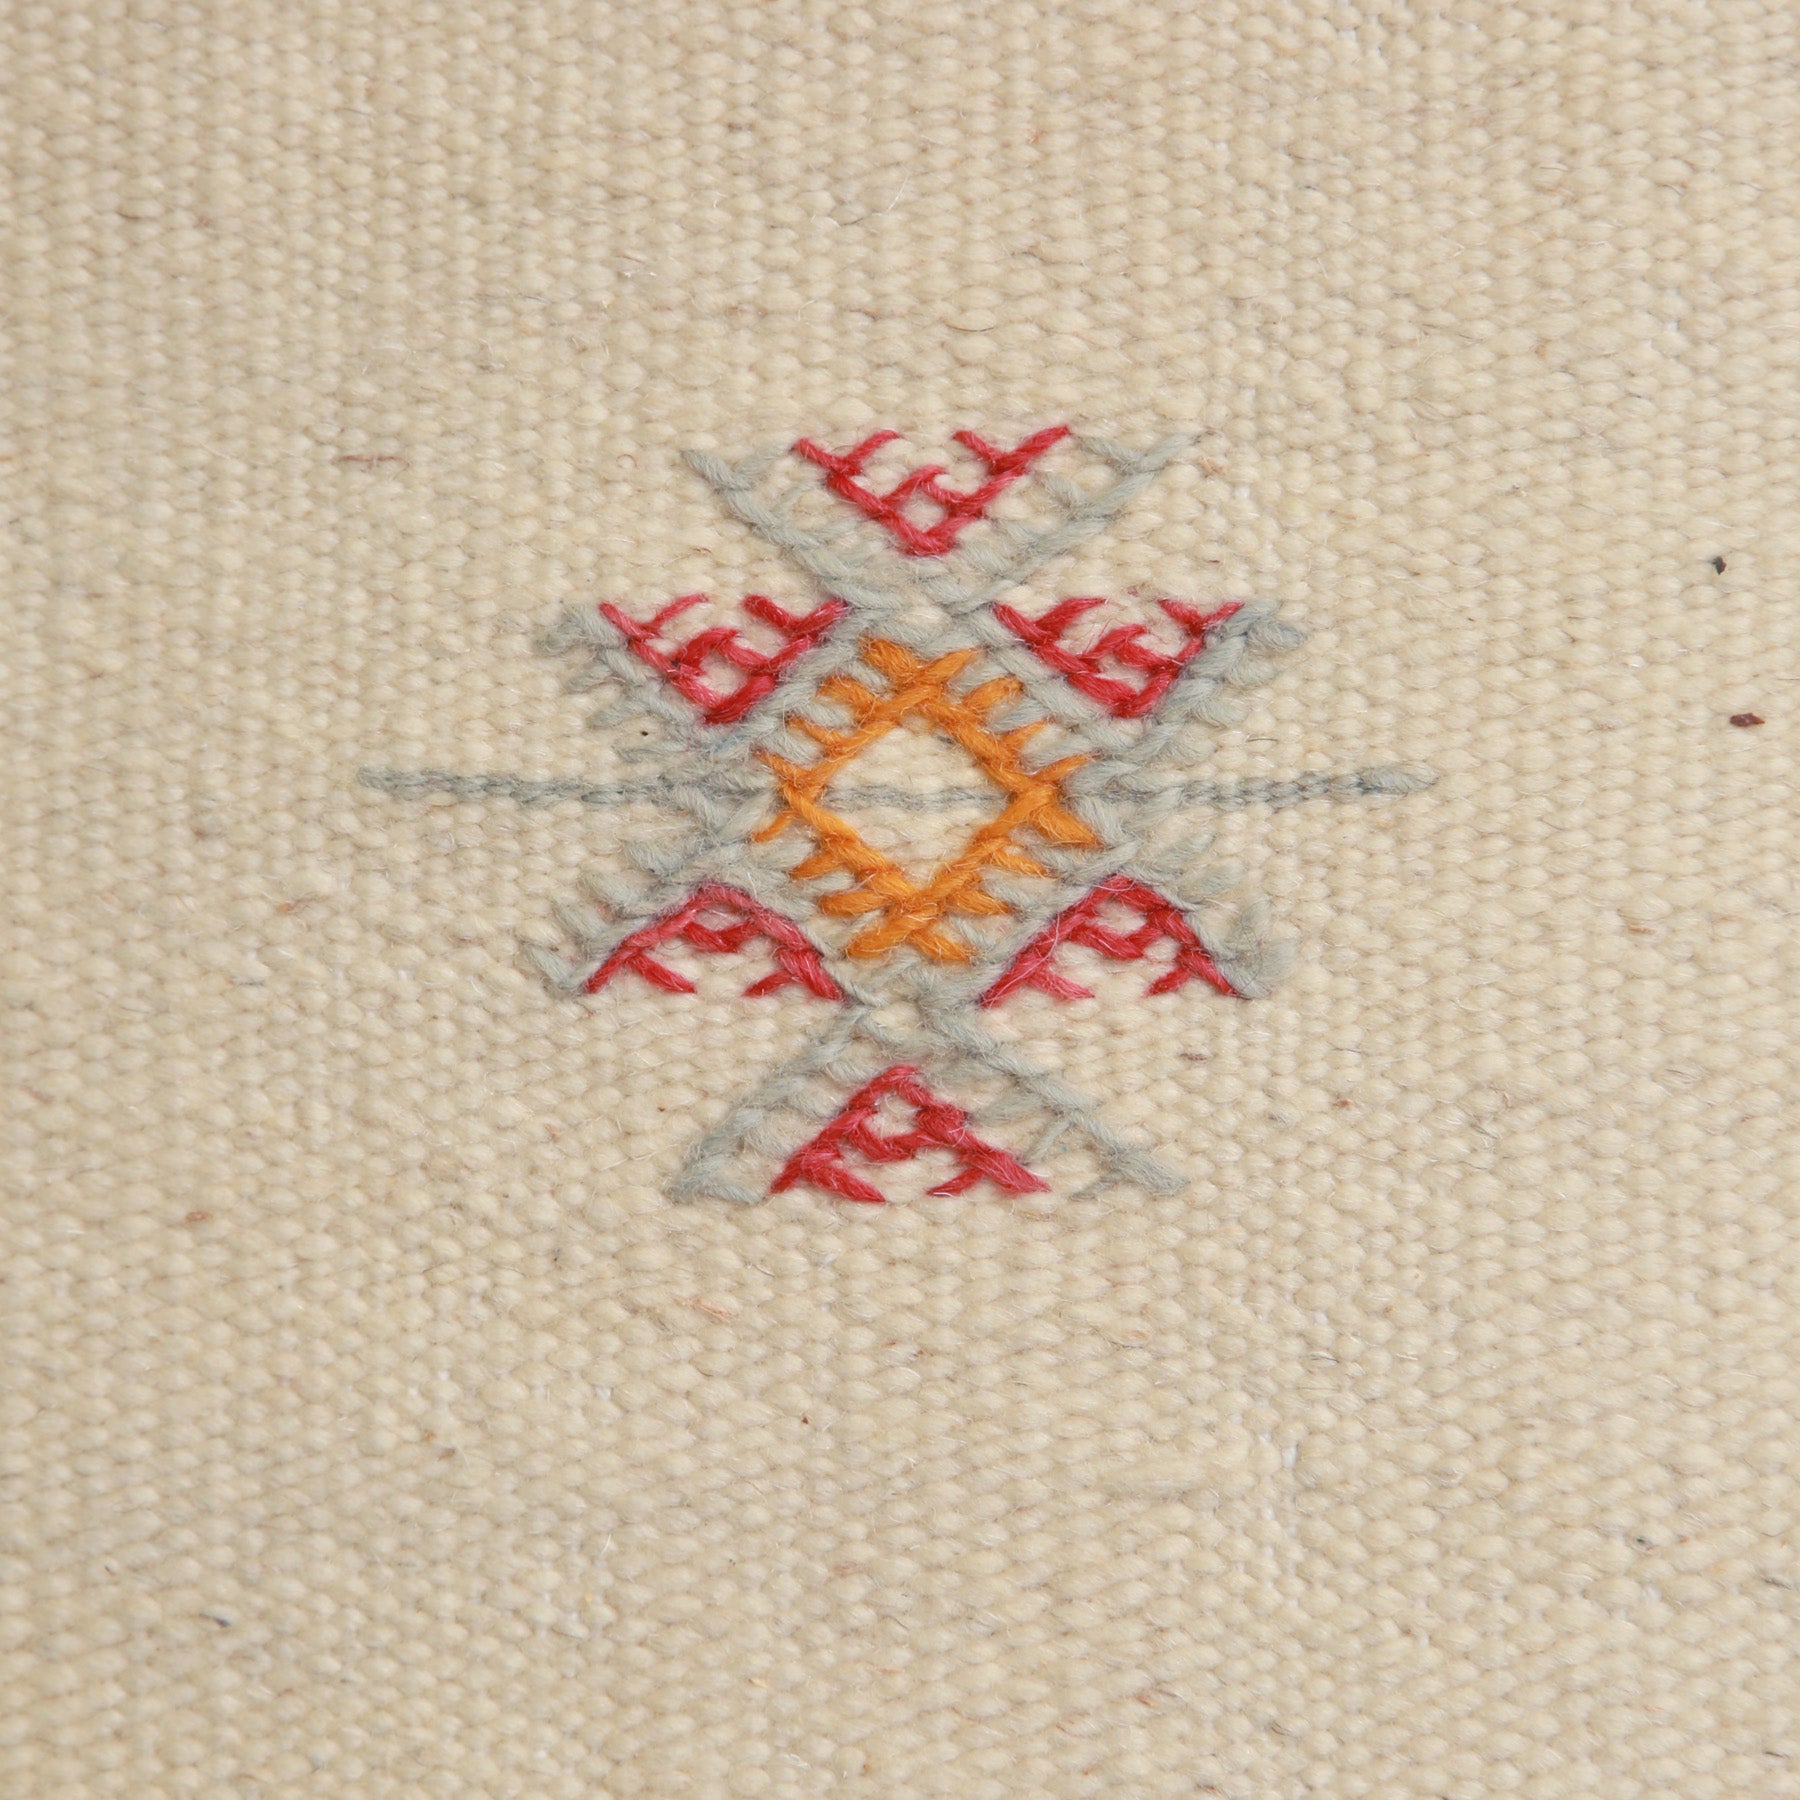 dettaglio di un simbolo amazigh ricamato in grigio rosso e arancione su un tappeto marocchino akhnif a tessitura bianca in lana bianca